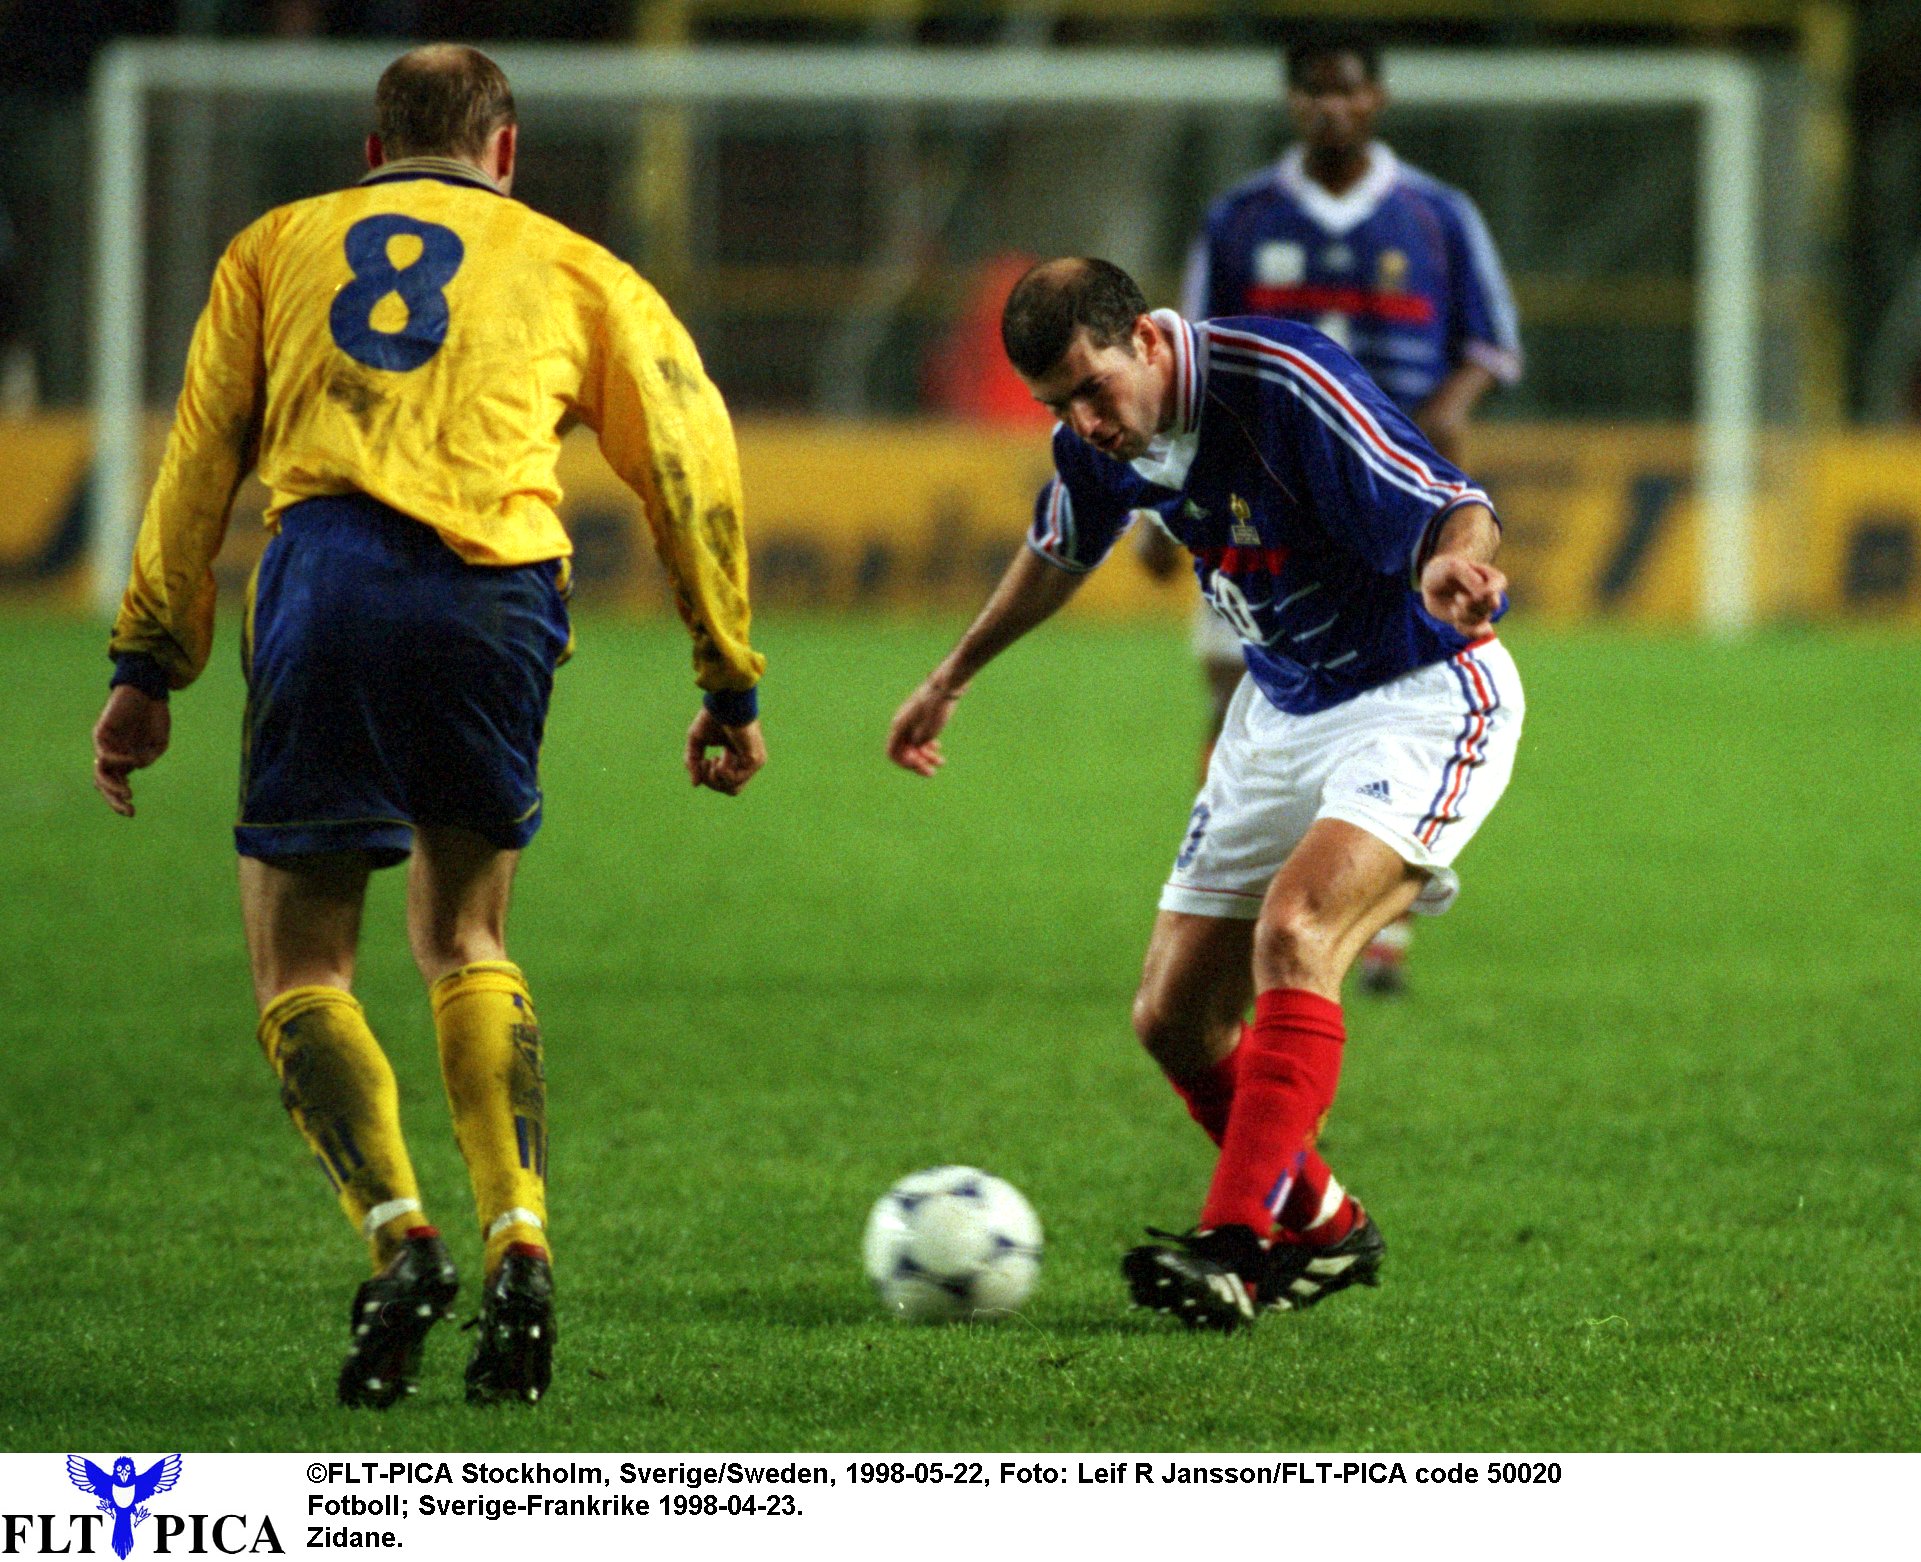 Åtminstone en stor fotbollsspelare har faktiskt spelat på Råsunda under modern tid. Här syns Zinedine Zidane leka med Håkan Mild.